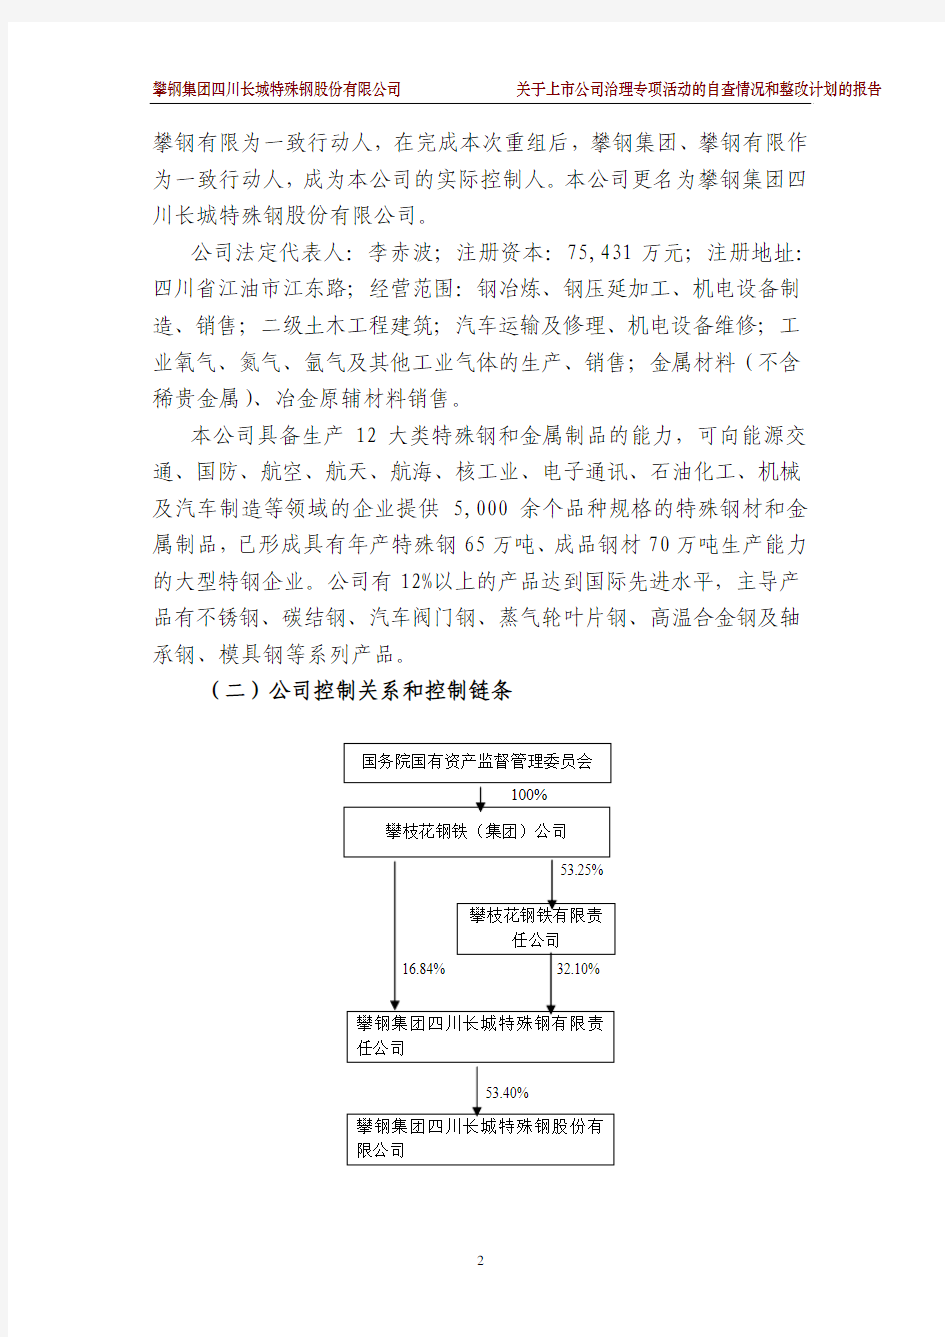 根据中国证监会证监公司字[2007]第28号《关于开展加强上市